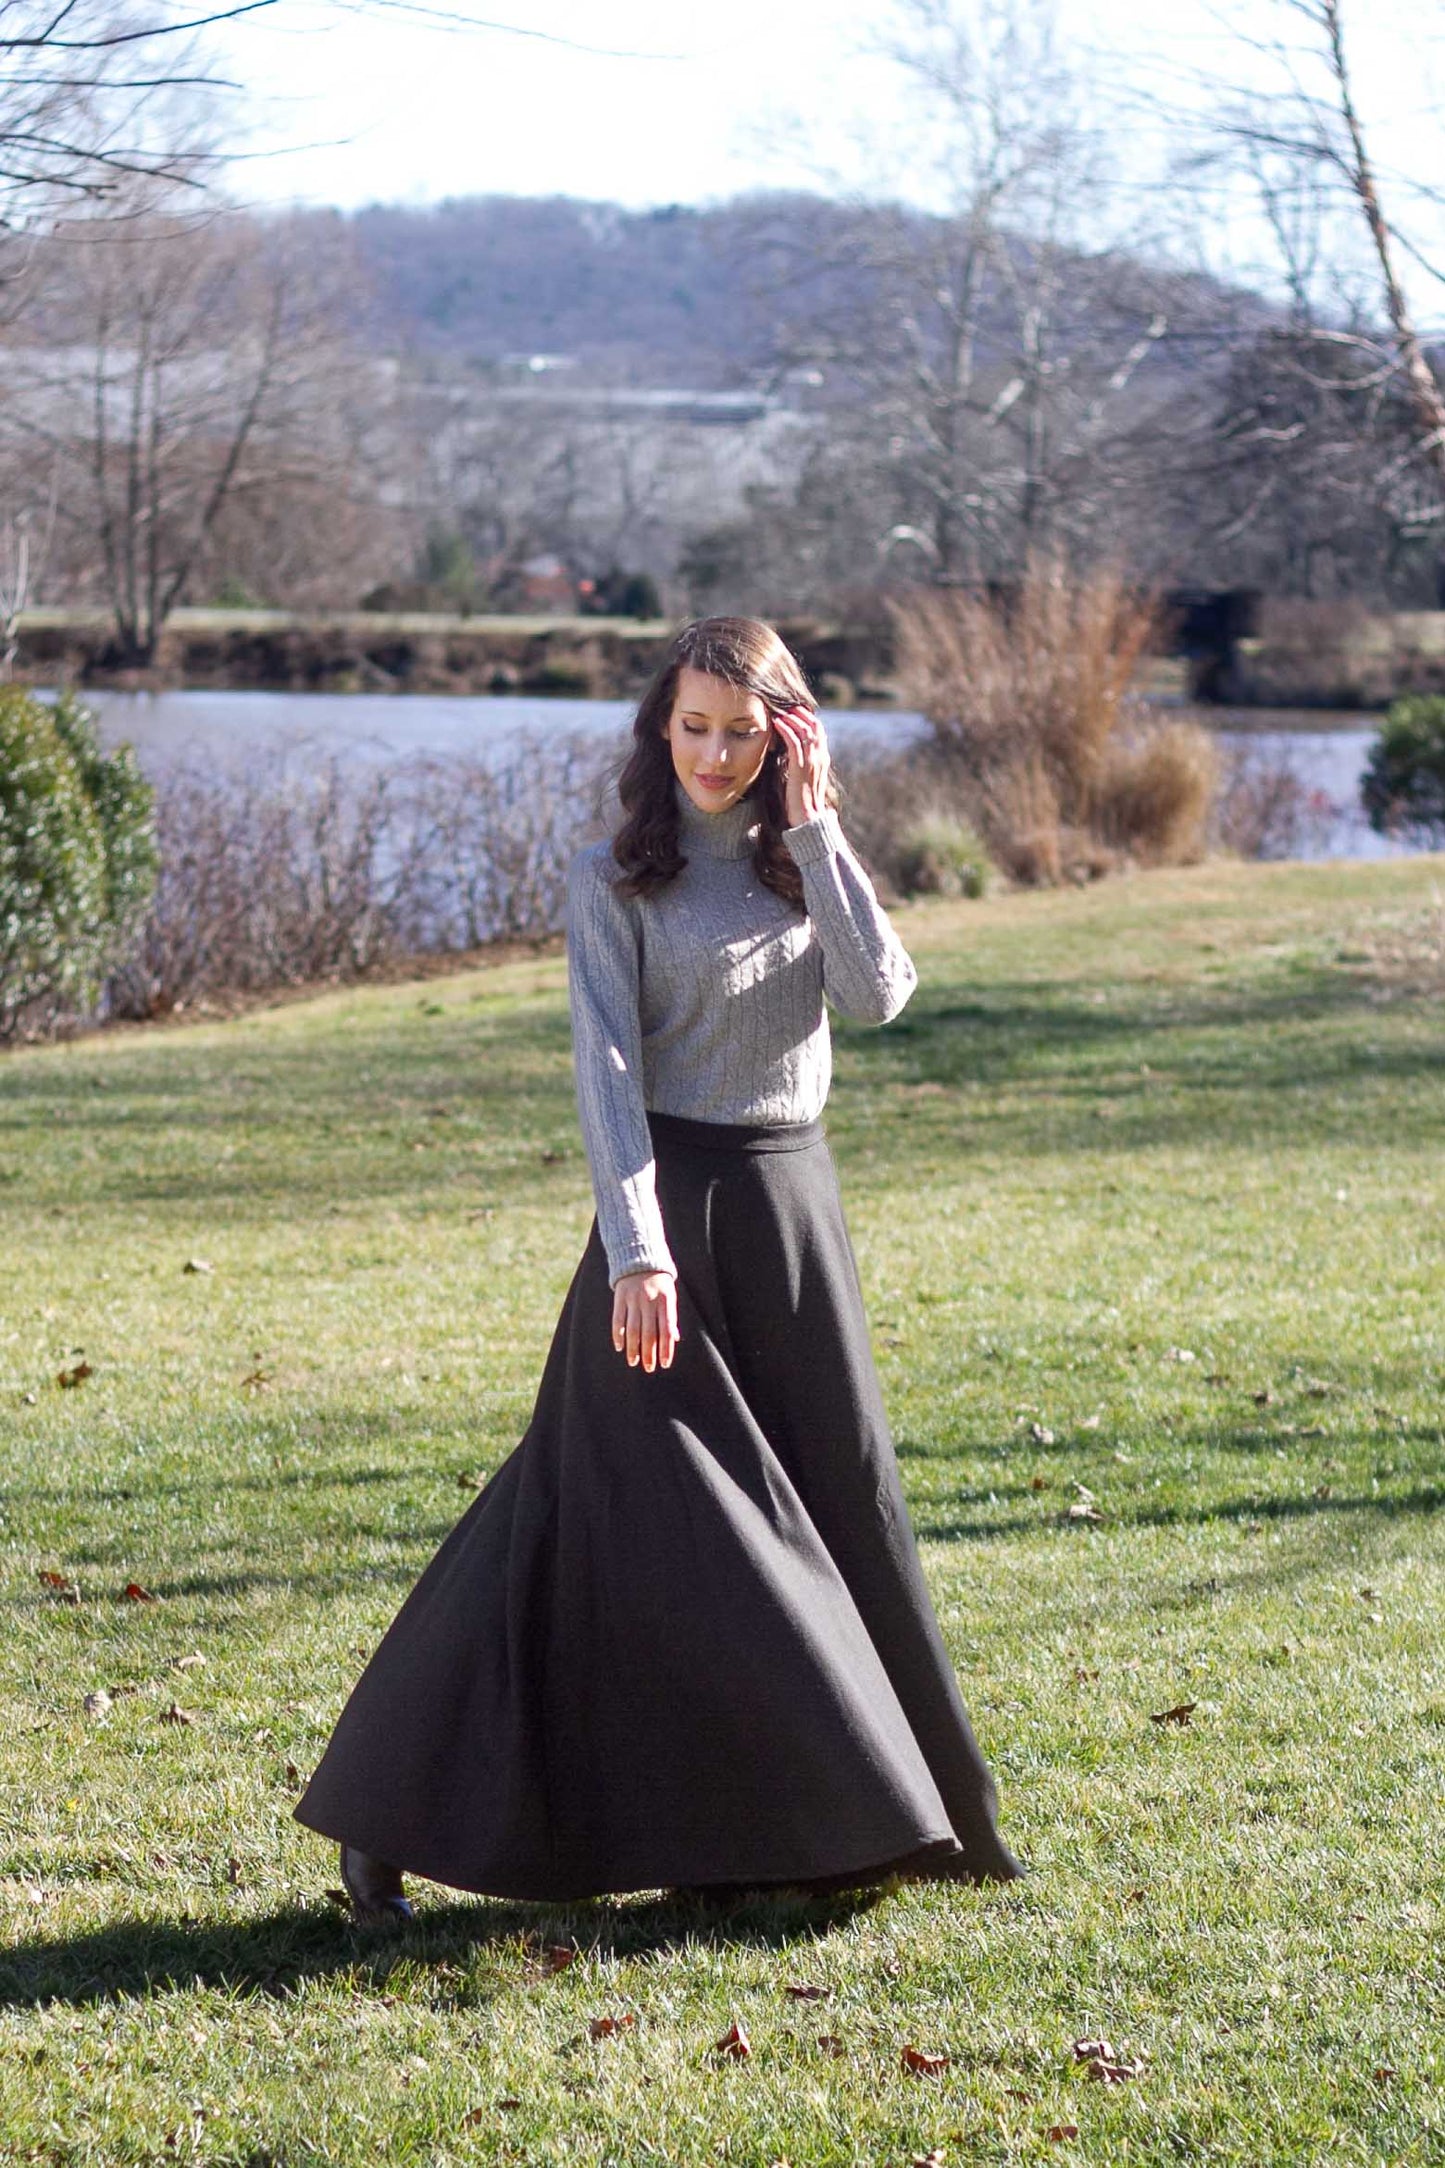 Woman twirling in Black long wool skirt